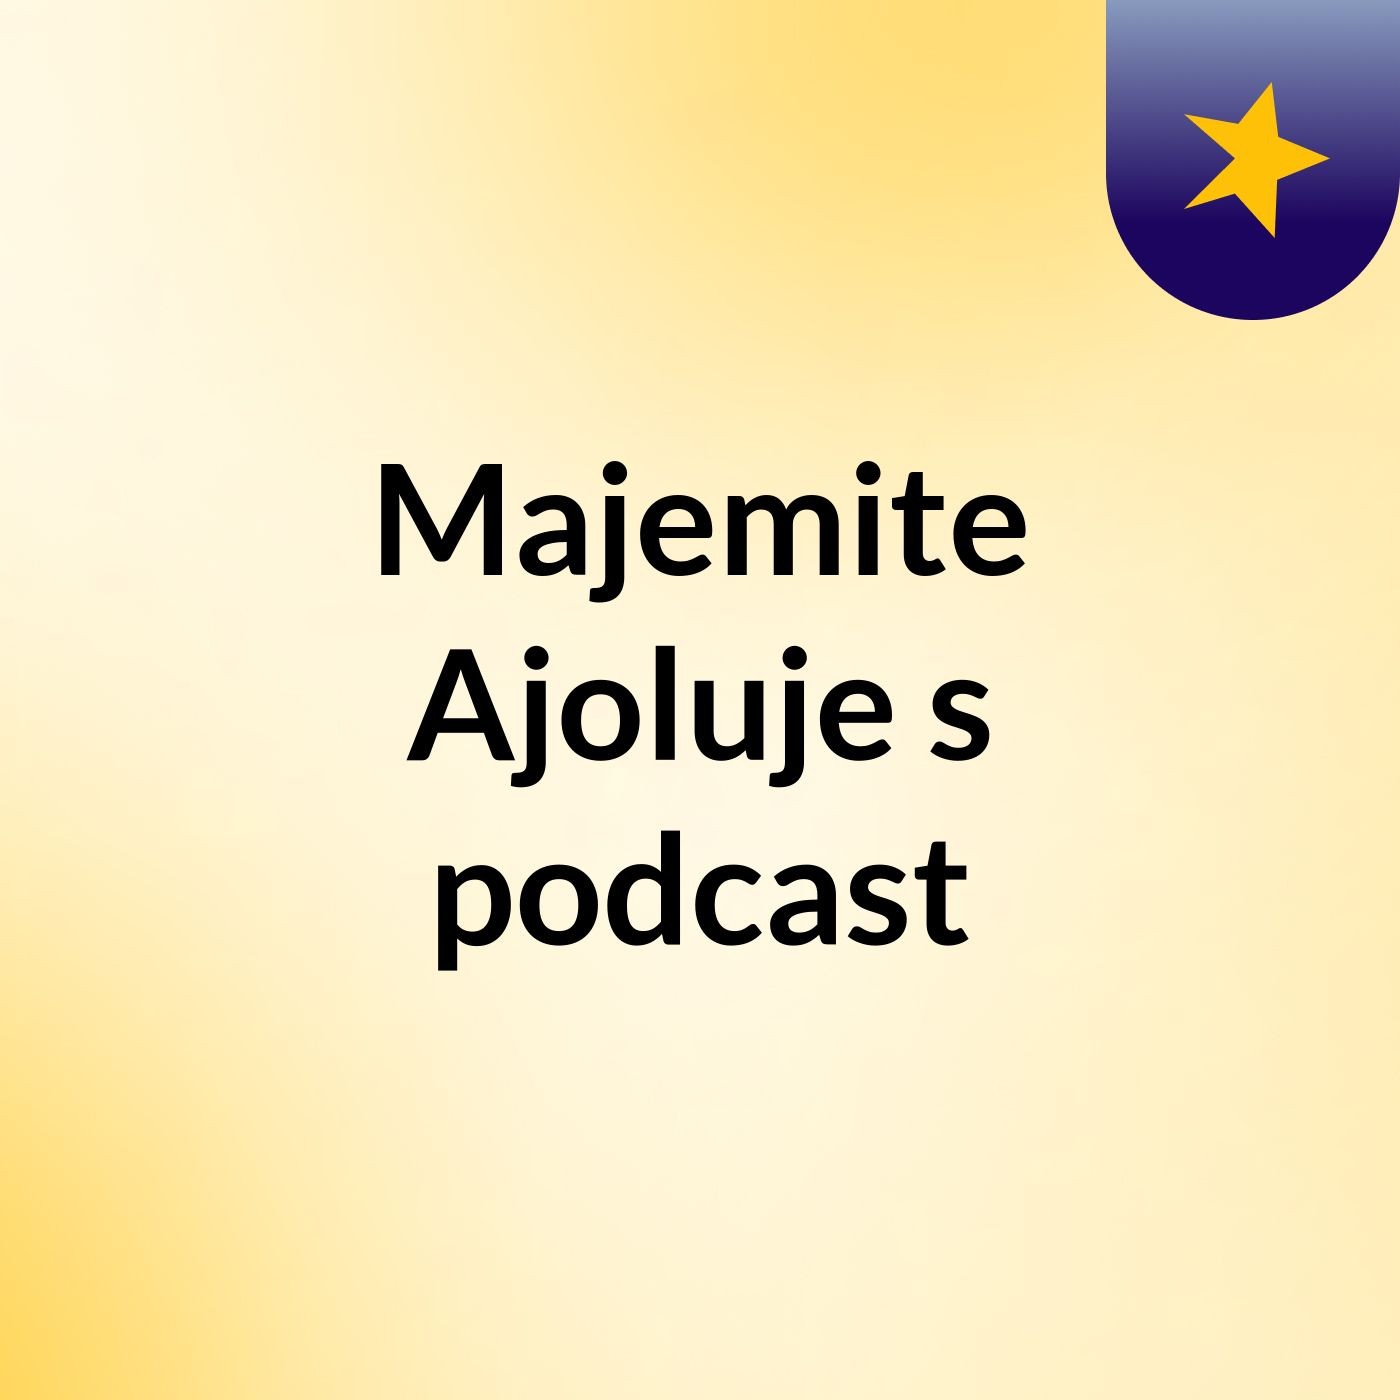 Majemite Ajoluje's podcast